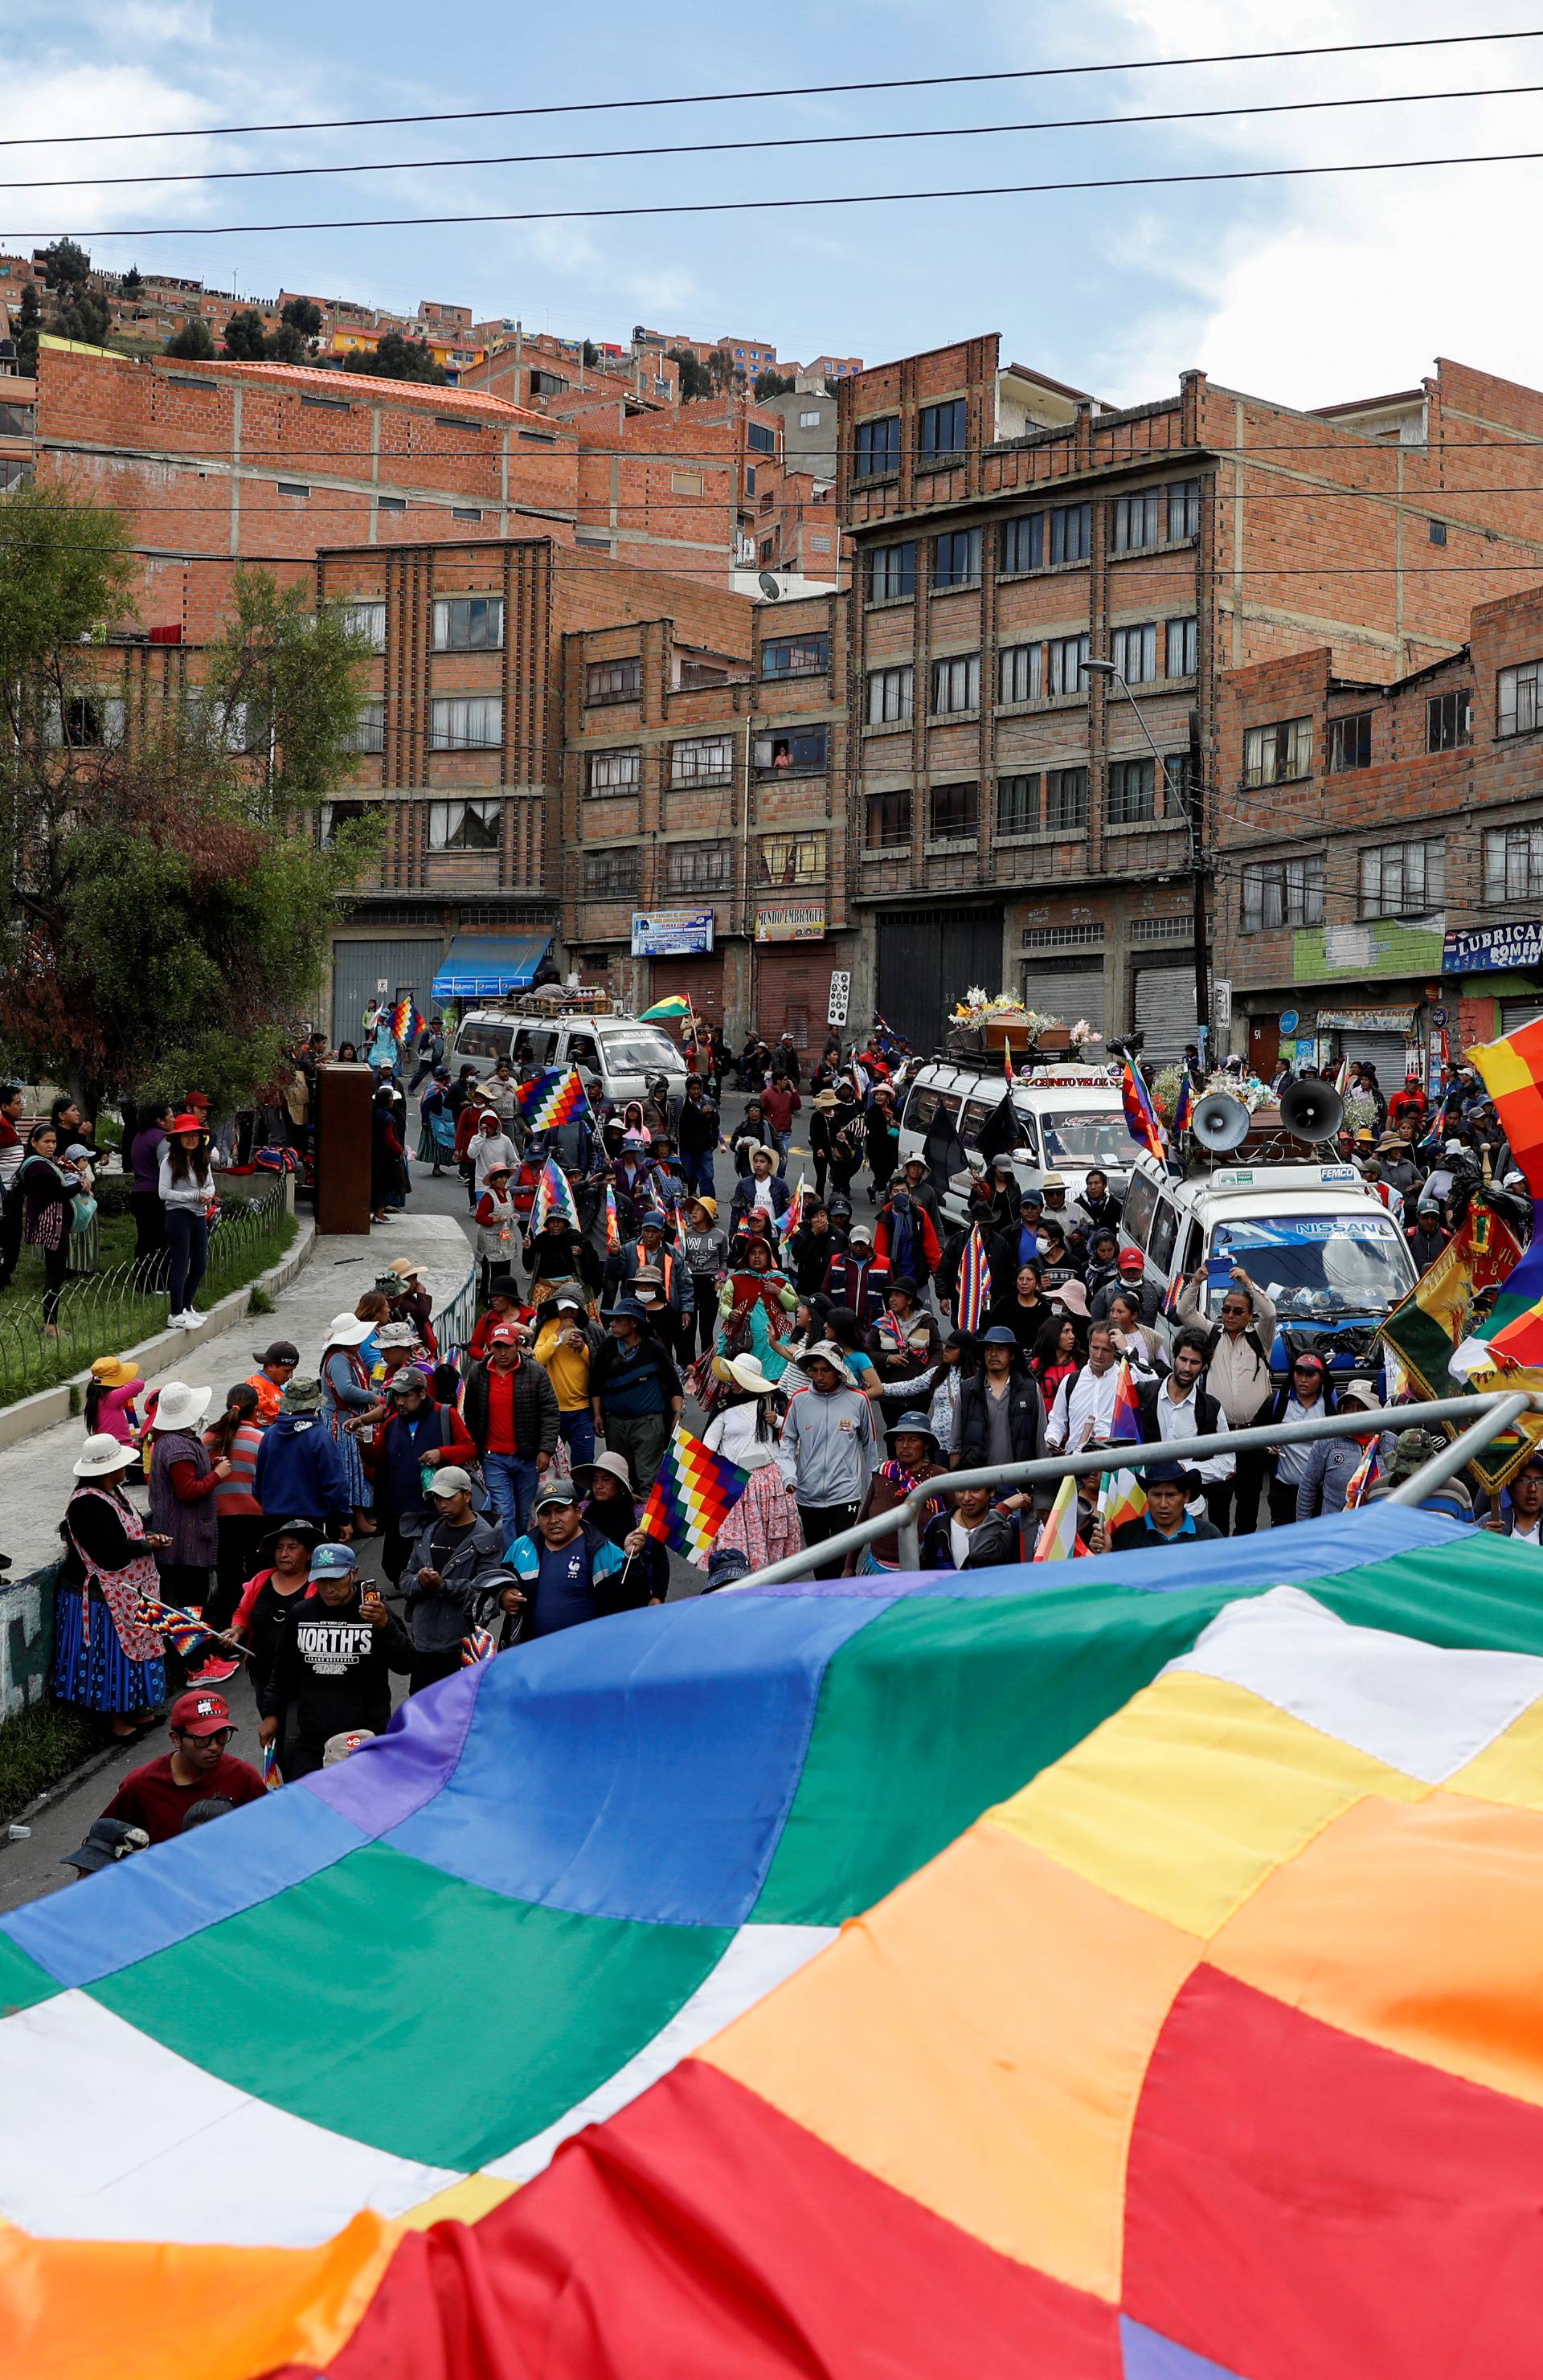 Kaos u Boliviji: Bacali lijesove nakon suzavca i batinjanja...